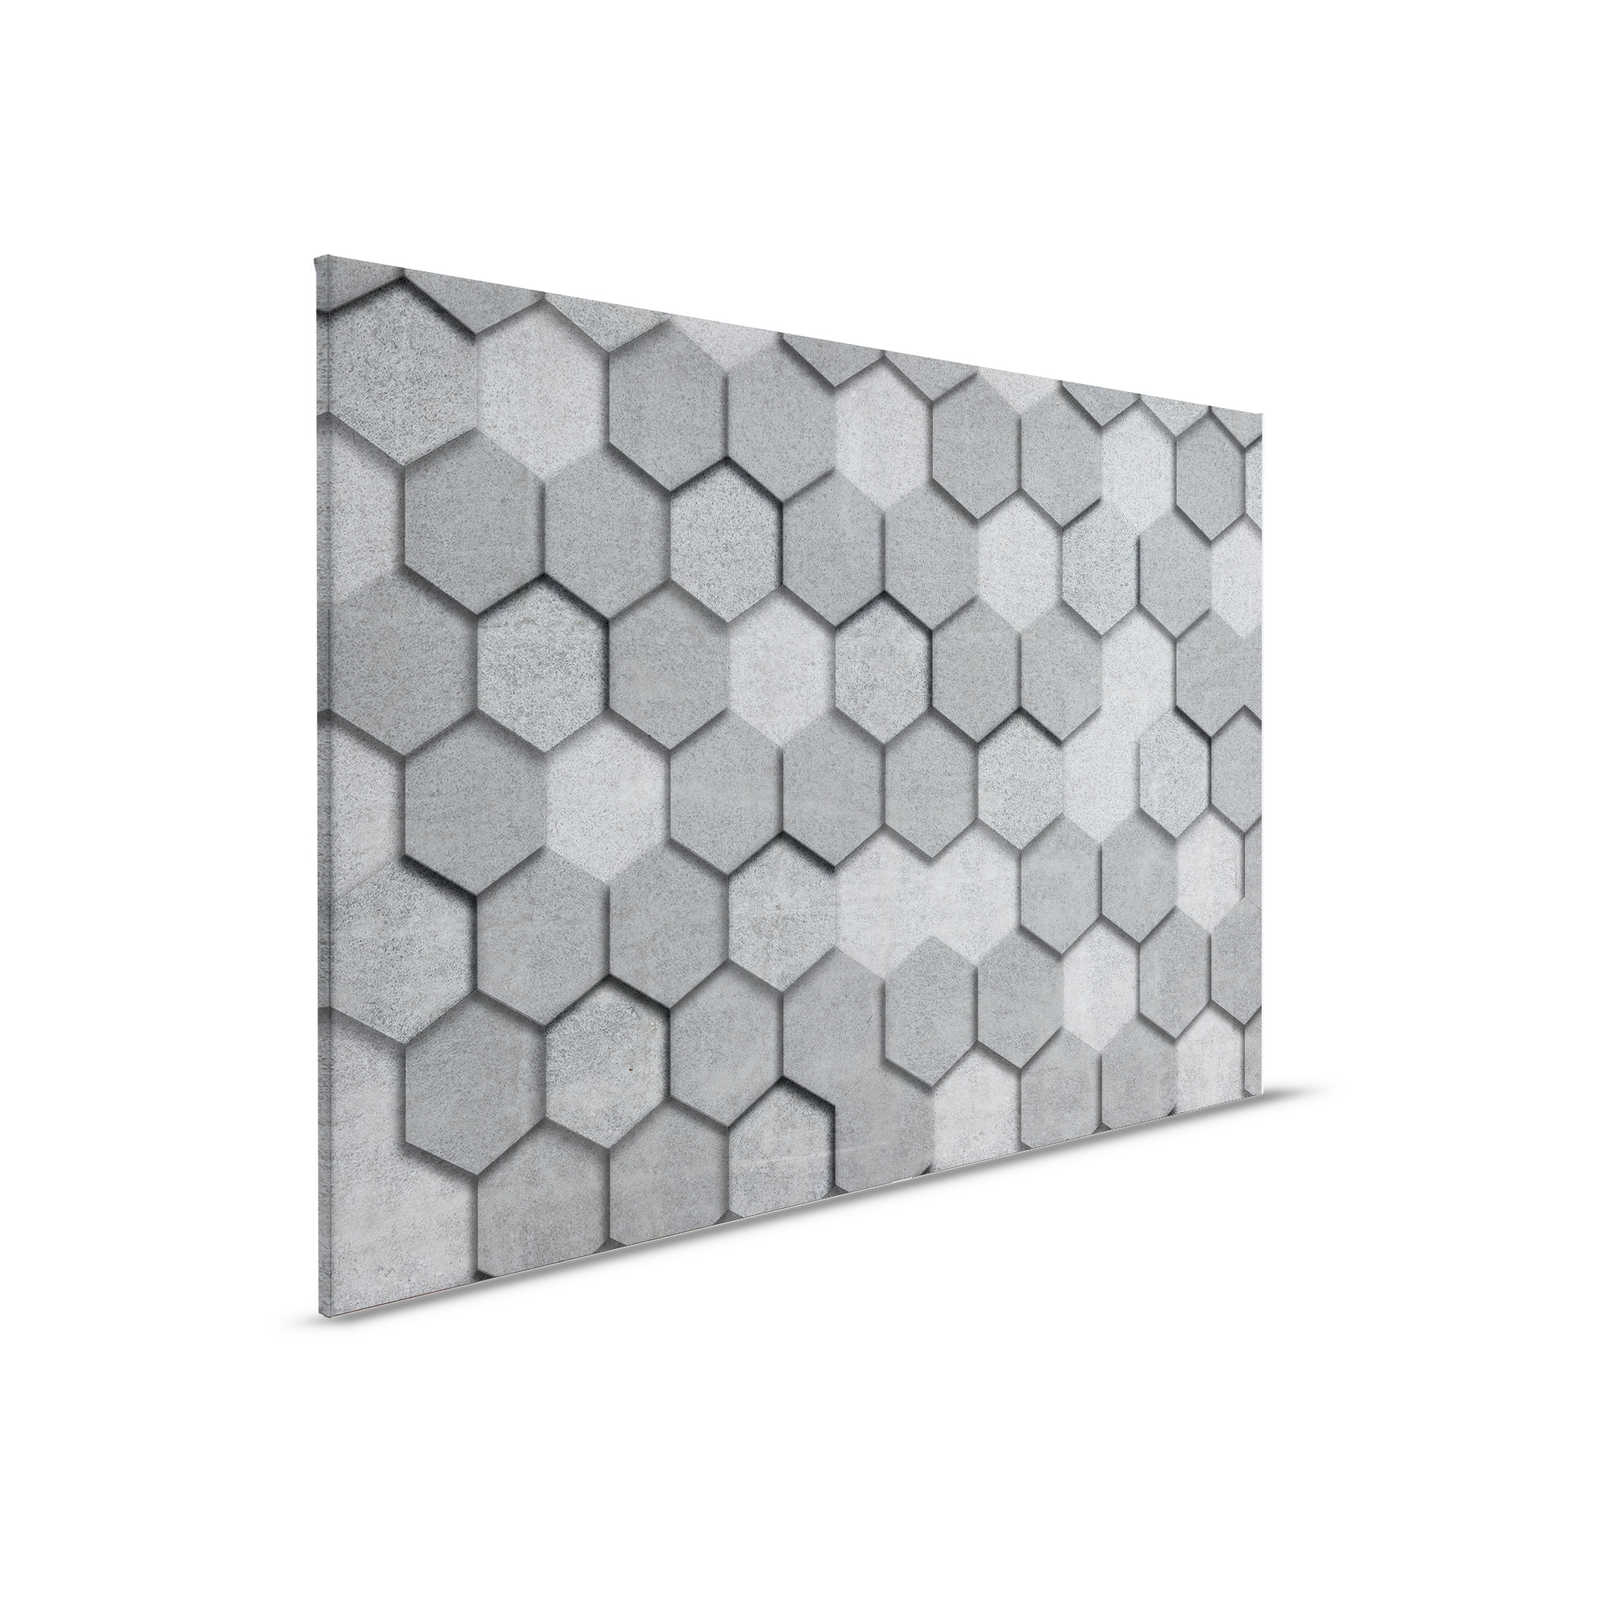         Leinwandbild mit geometrischen Kacheln sechseckig 3D-Optik | grau, silber – 0,90 m x 0,60 m
    